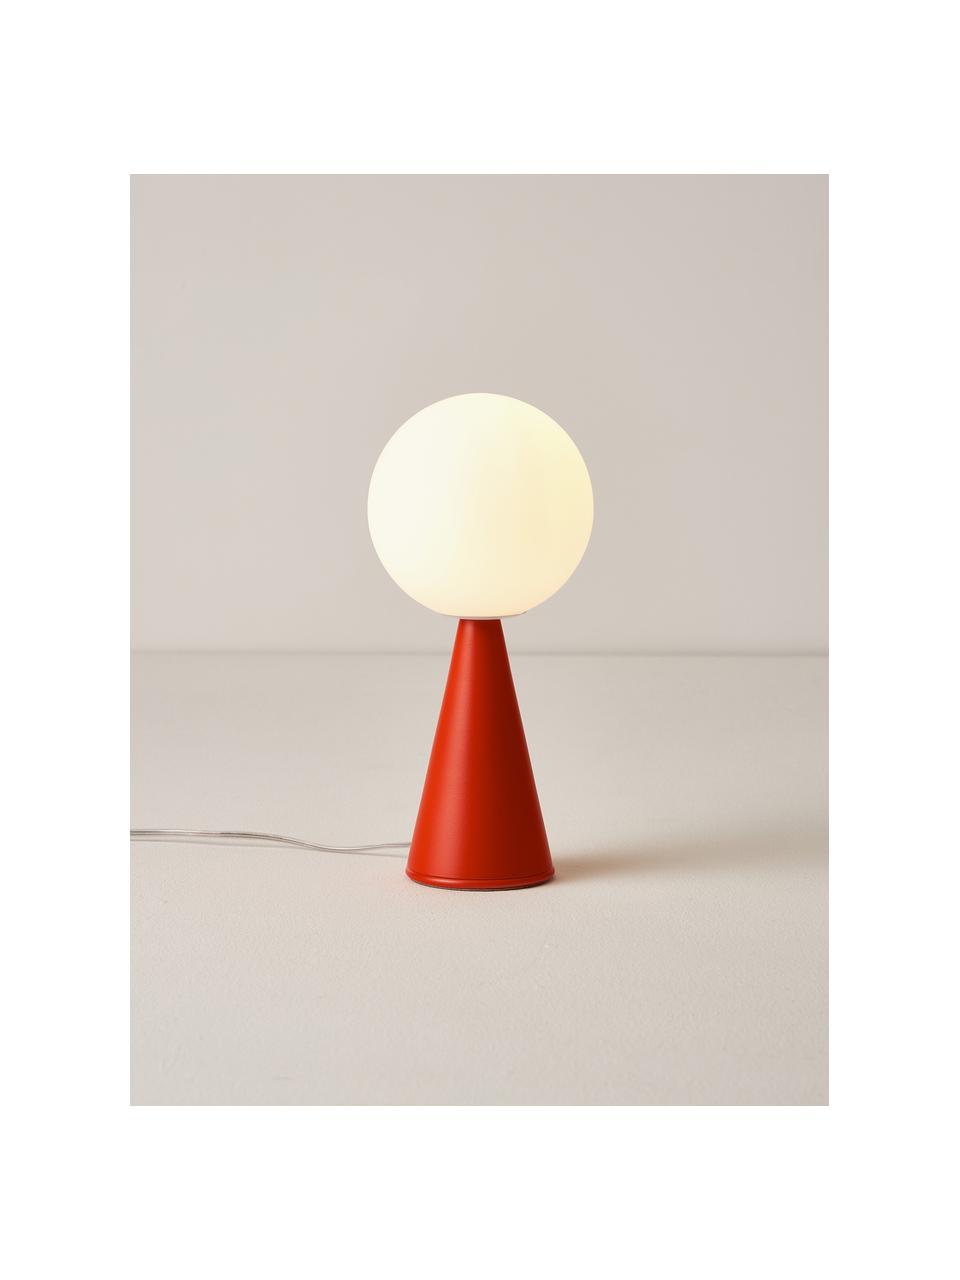 Malá stolní lampa Bilia, ručně vyrobená, Bílá, červená, Ø 12 cm, V 26 cm